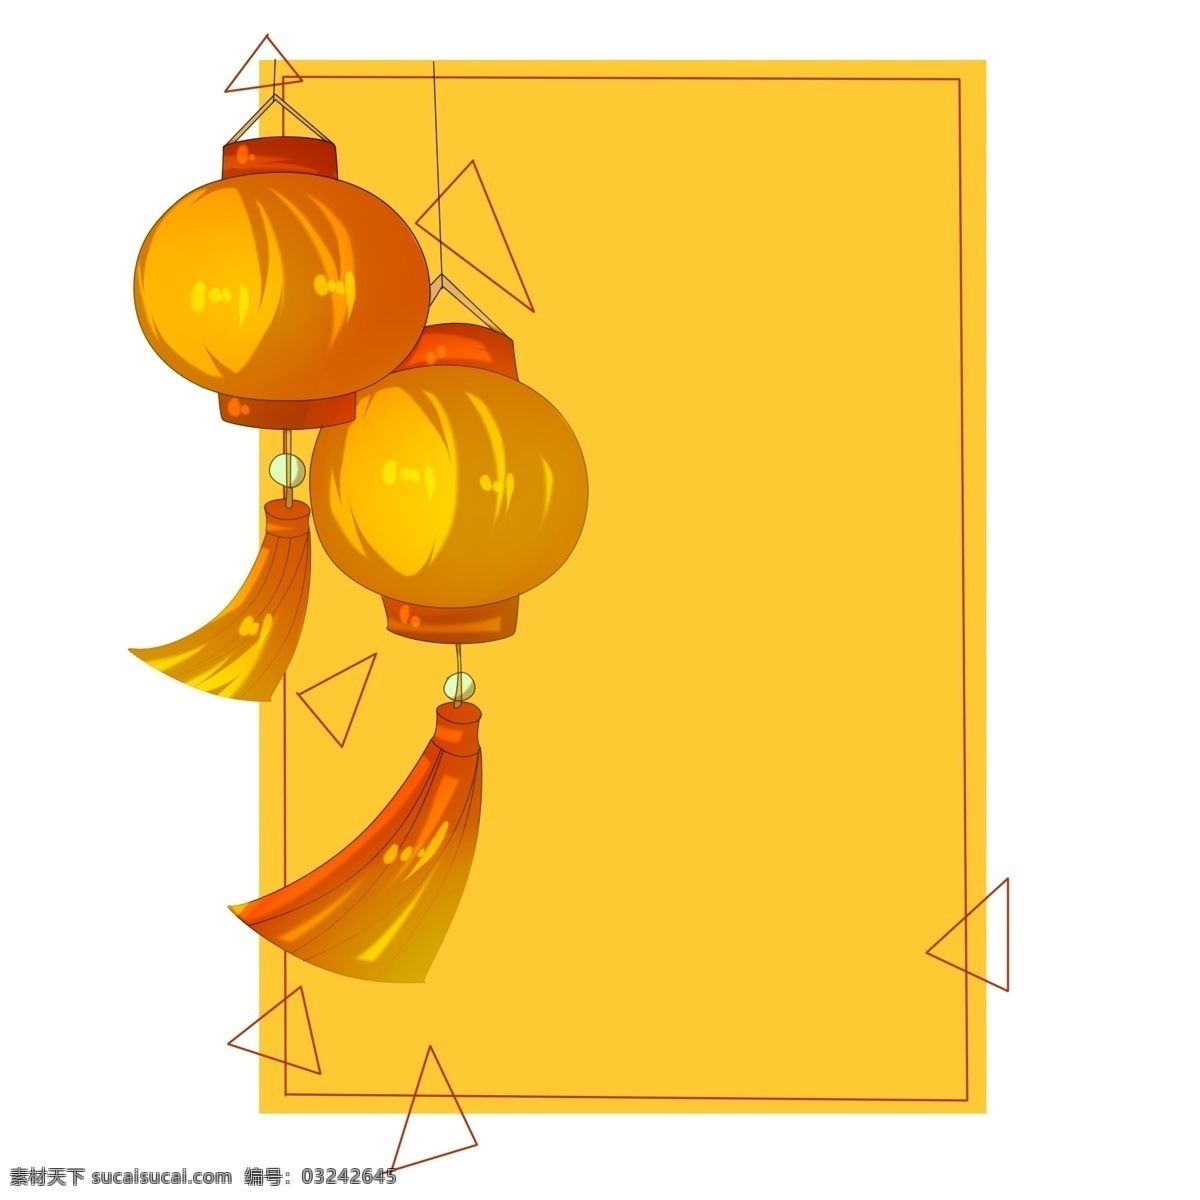 手绘 灯笼 边框 插画 手绘边框 黄色色边框 灯笼边框 黄色渐变灯笼 两个灯笼装饰 灯笼挂饰 手绘边框插画